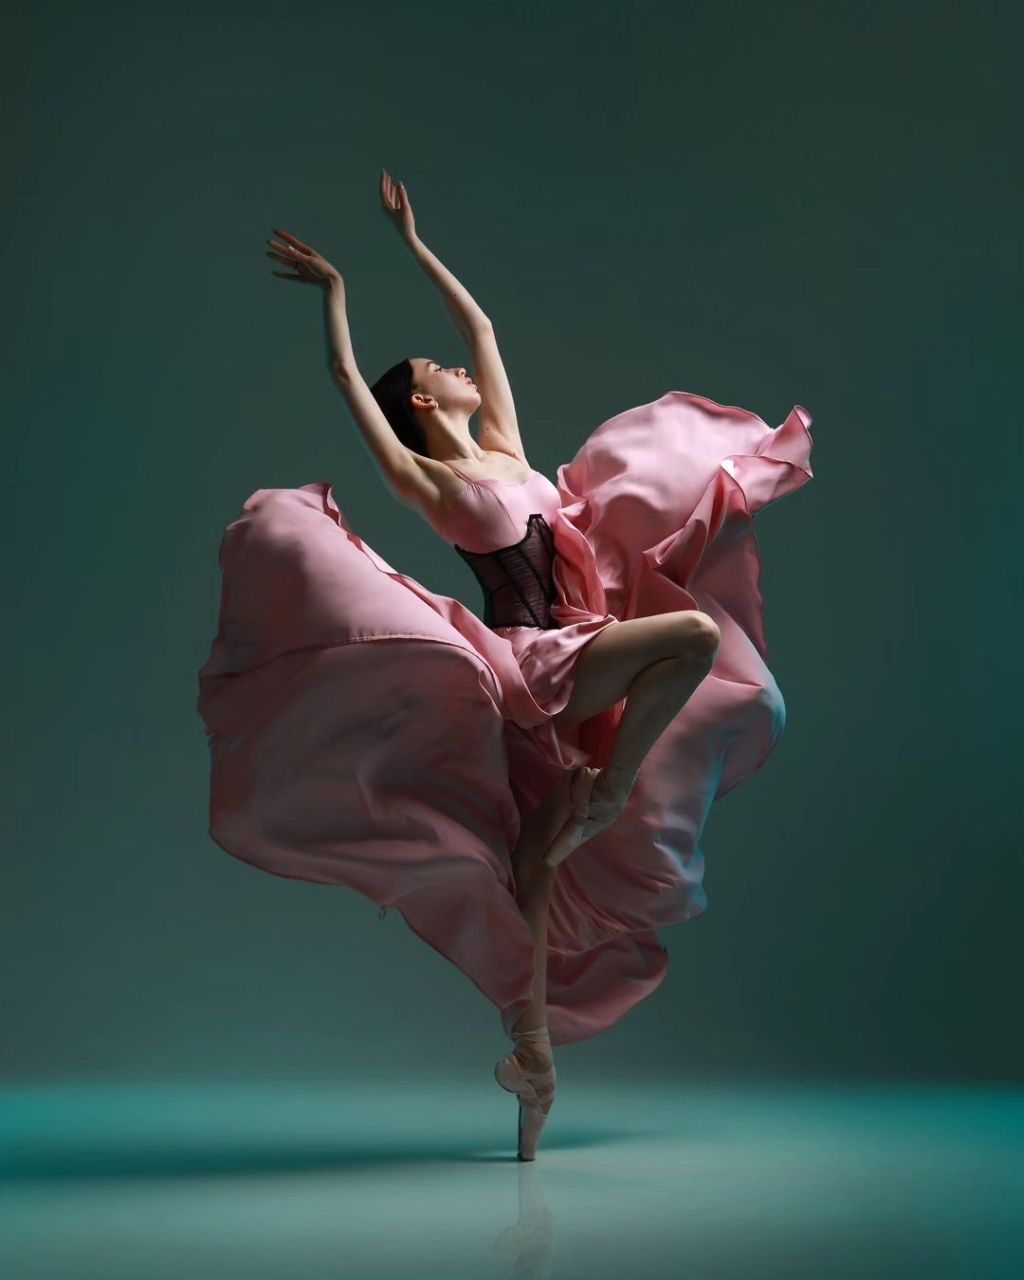 芭蕾舞是一种起源于意大利文艺复兴时期的舞蹈形式,经过多个世纪的